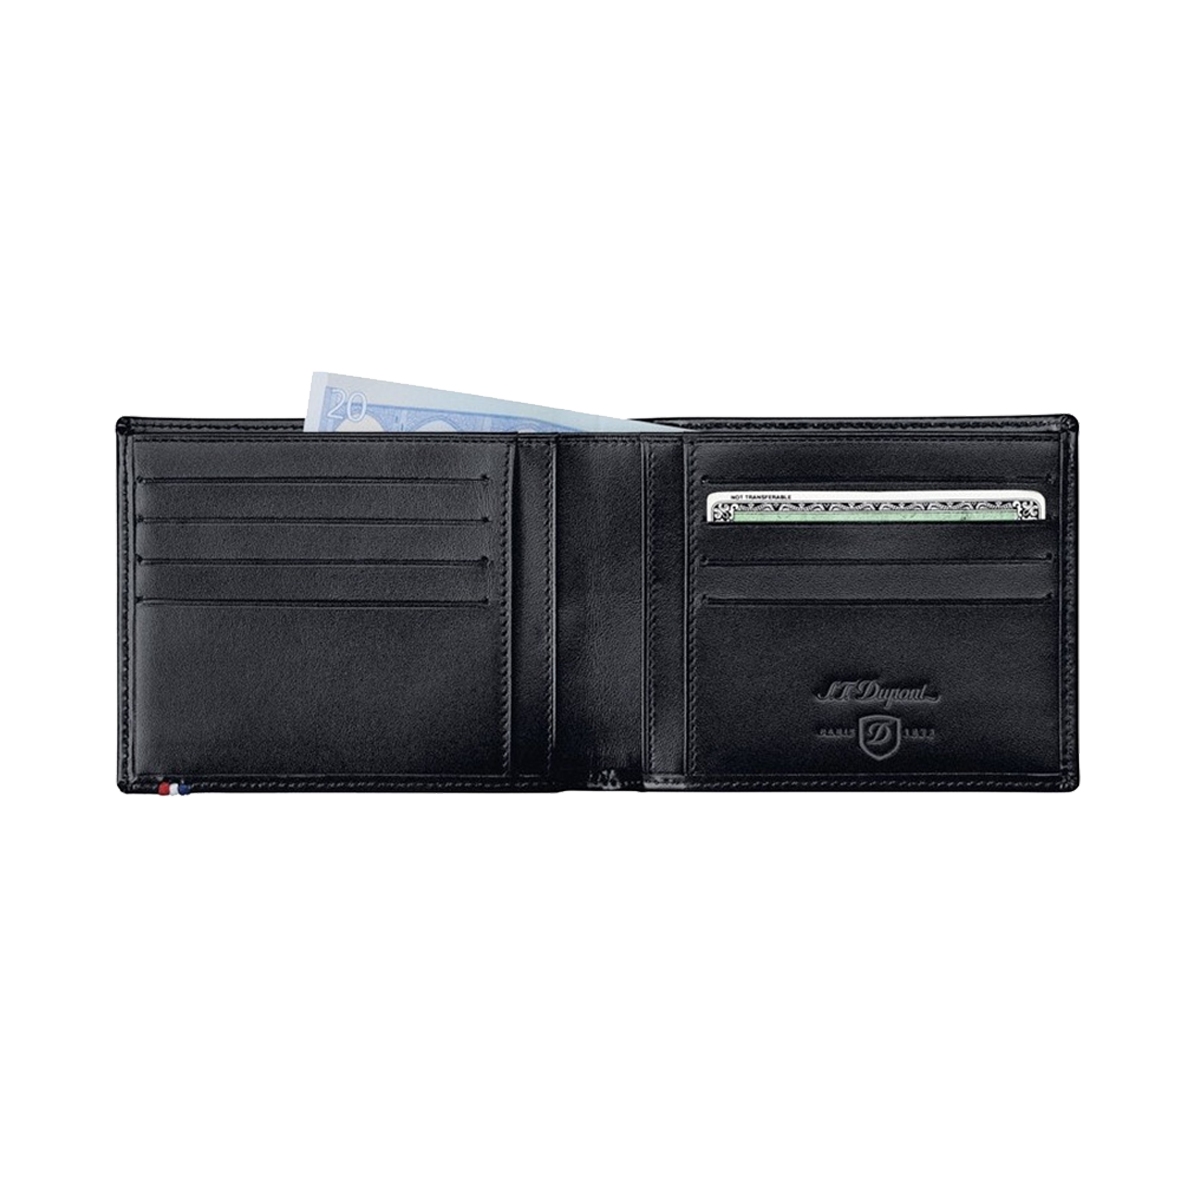 Портмоне Line D 180003 Цвет Чёрный Портмоне, гладкая кожа, 8 отделений для кредитных карт | S.T. Dupont